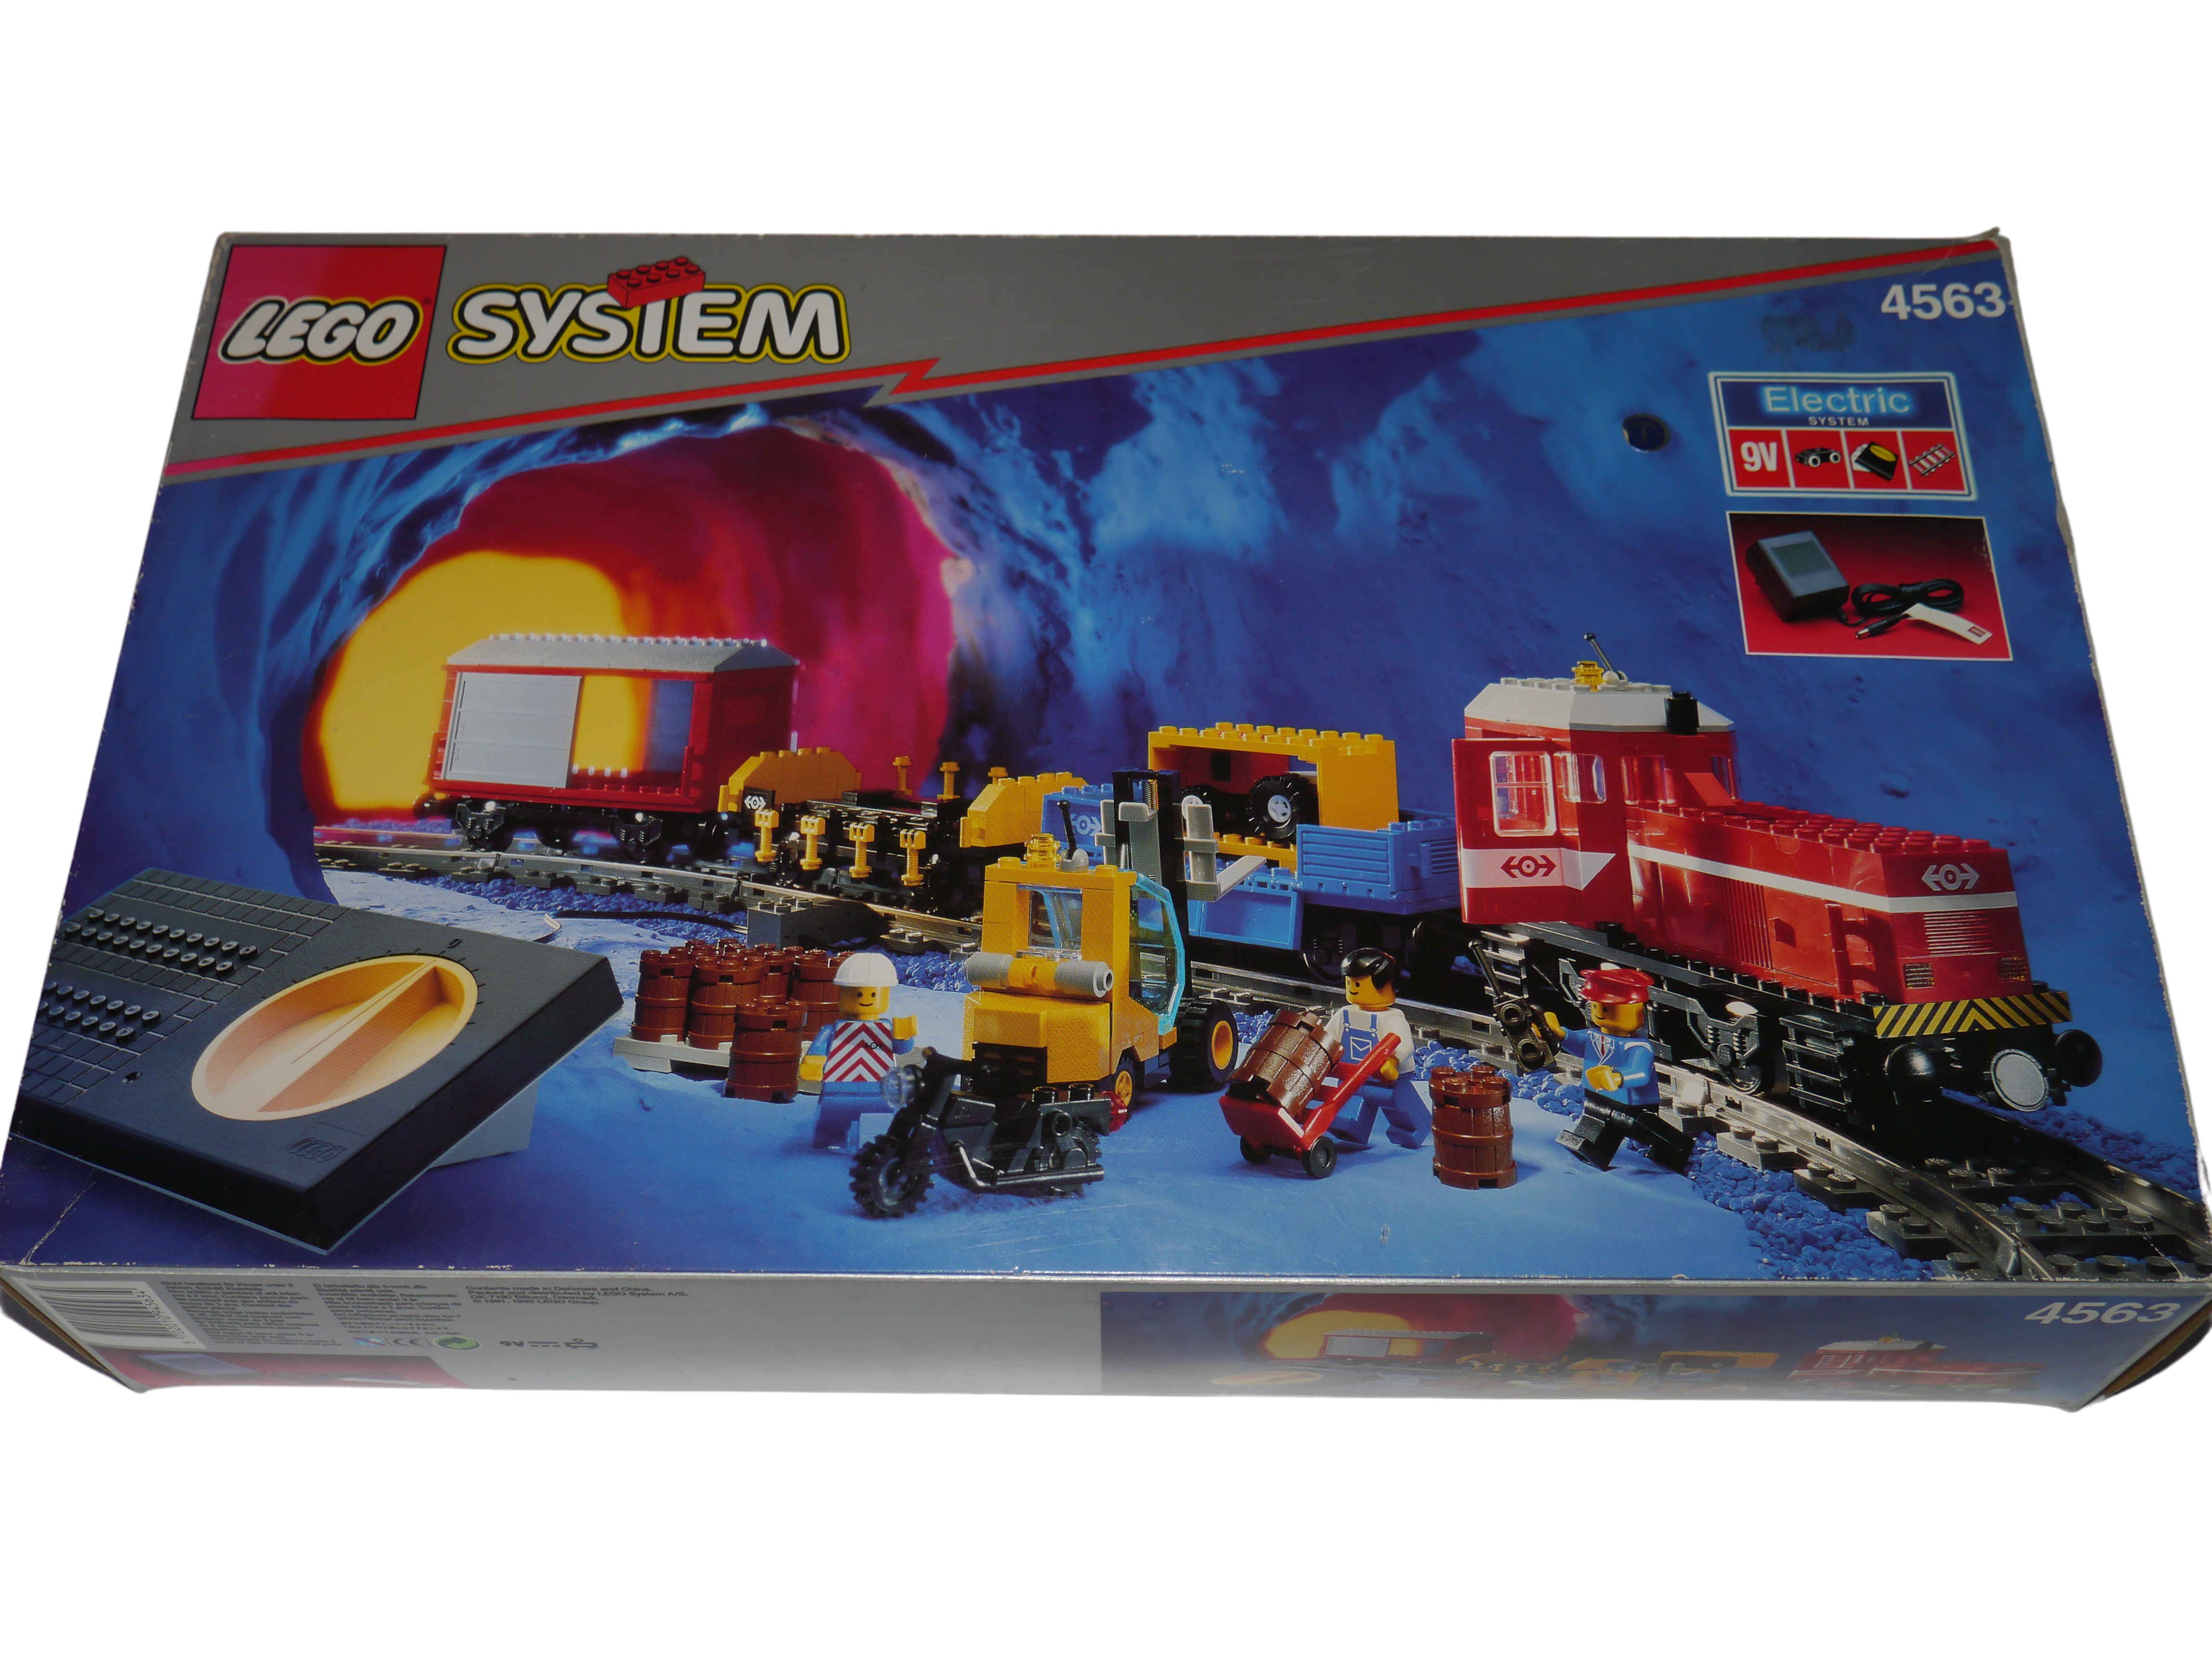 Lego® Eisenbahn TRAIN 4563 !! LEERE BOX !! NUR OVP VERPACKUNG !! ZUG - Bild 1 von 1